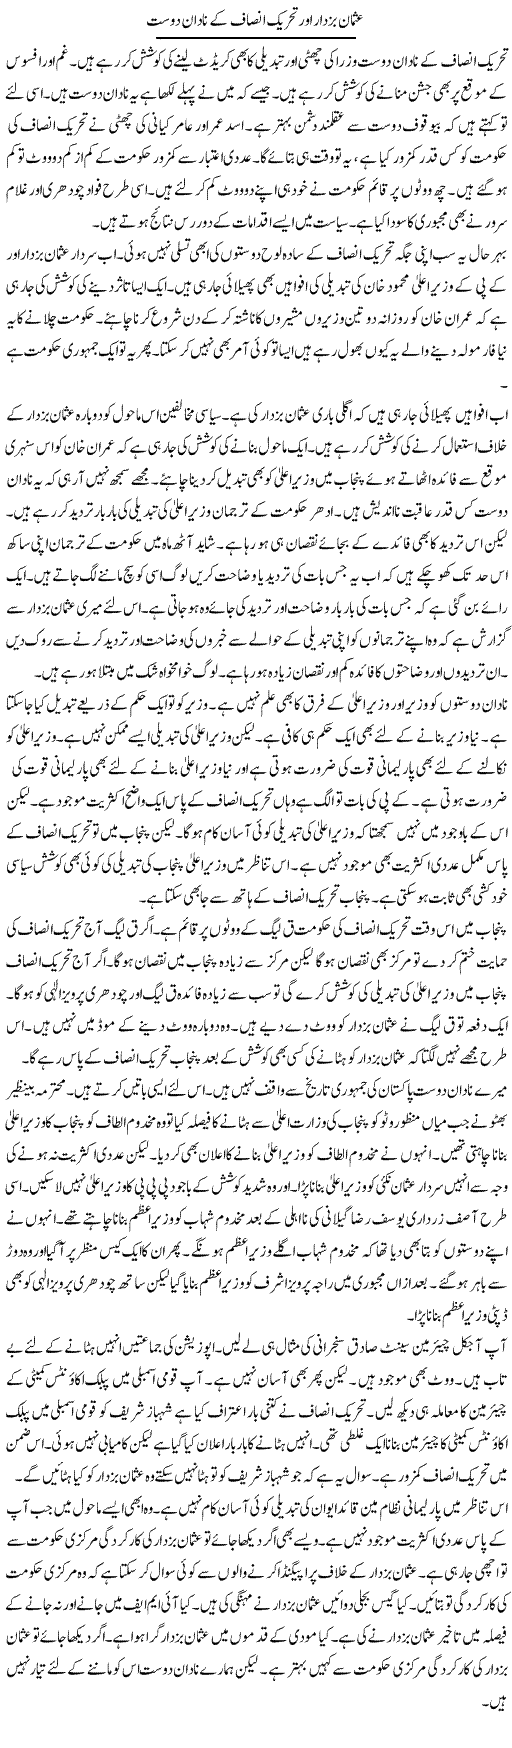 Usman Buzdar Aur Tehreek Insaf Ke Nadaan Dost | Muzamal Suharwardy | Daily Urdu Columns